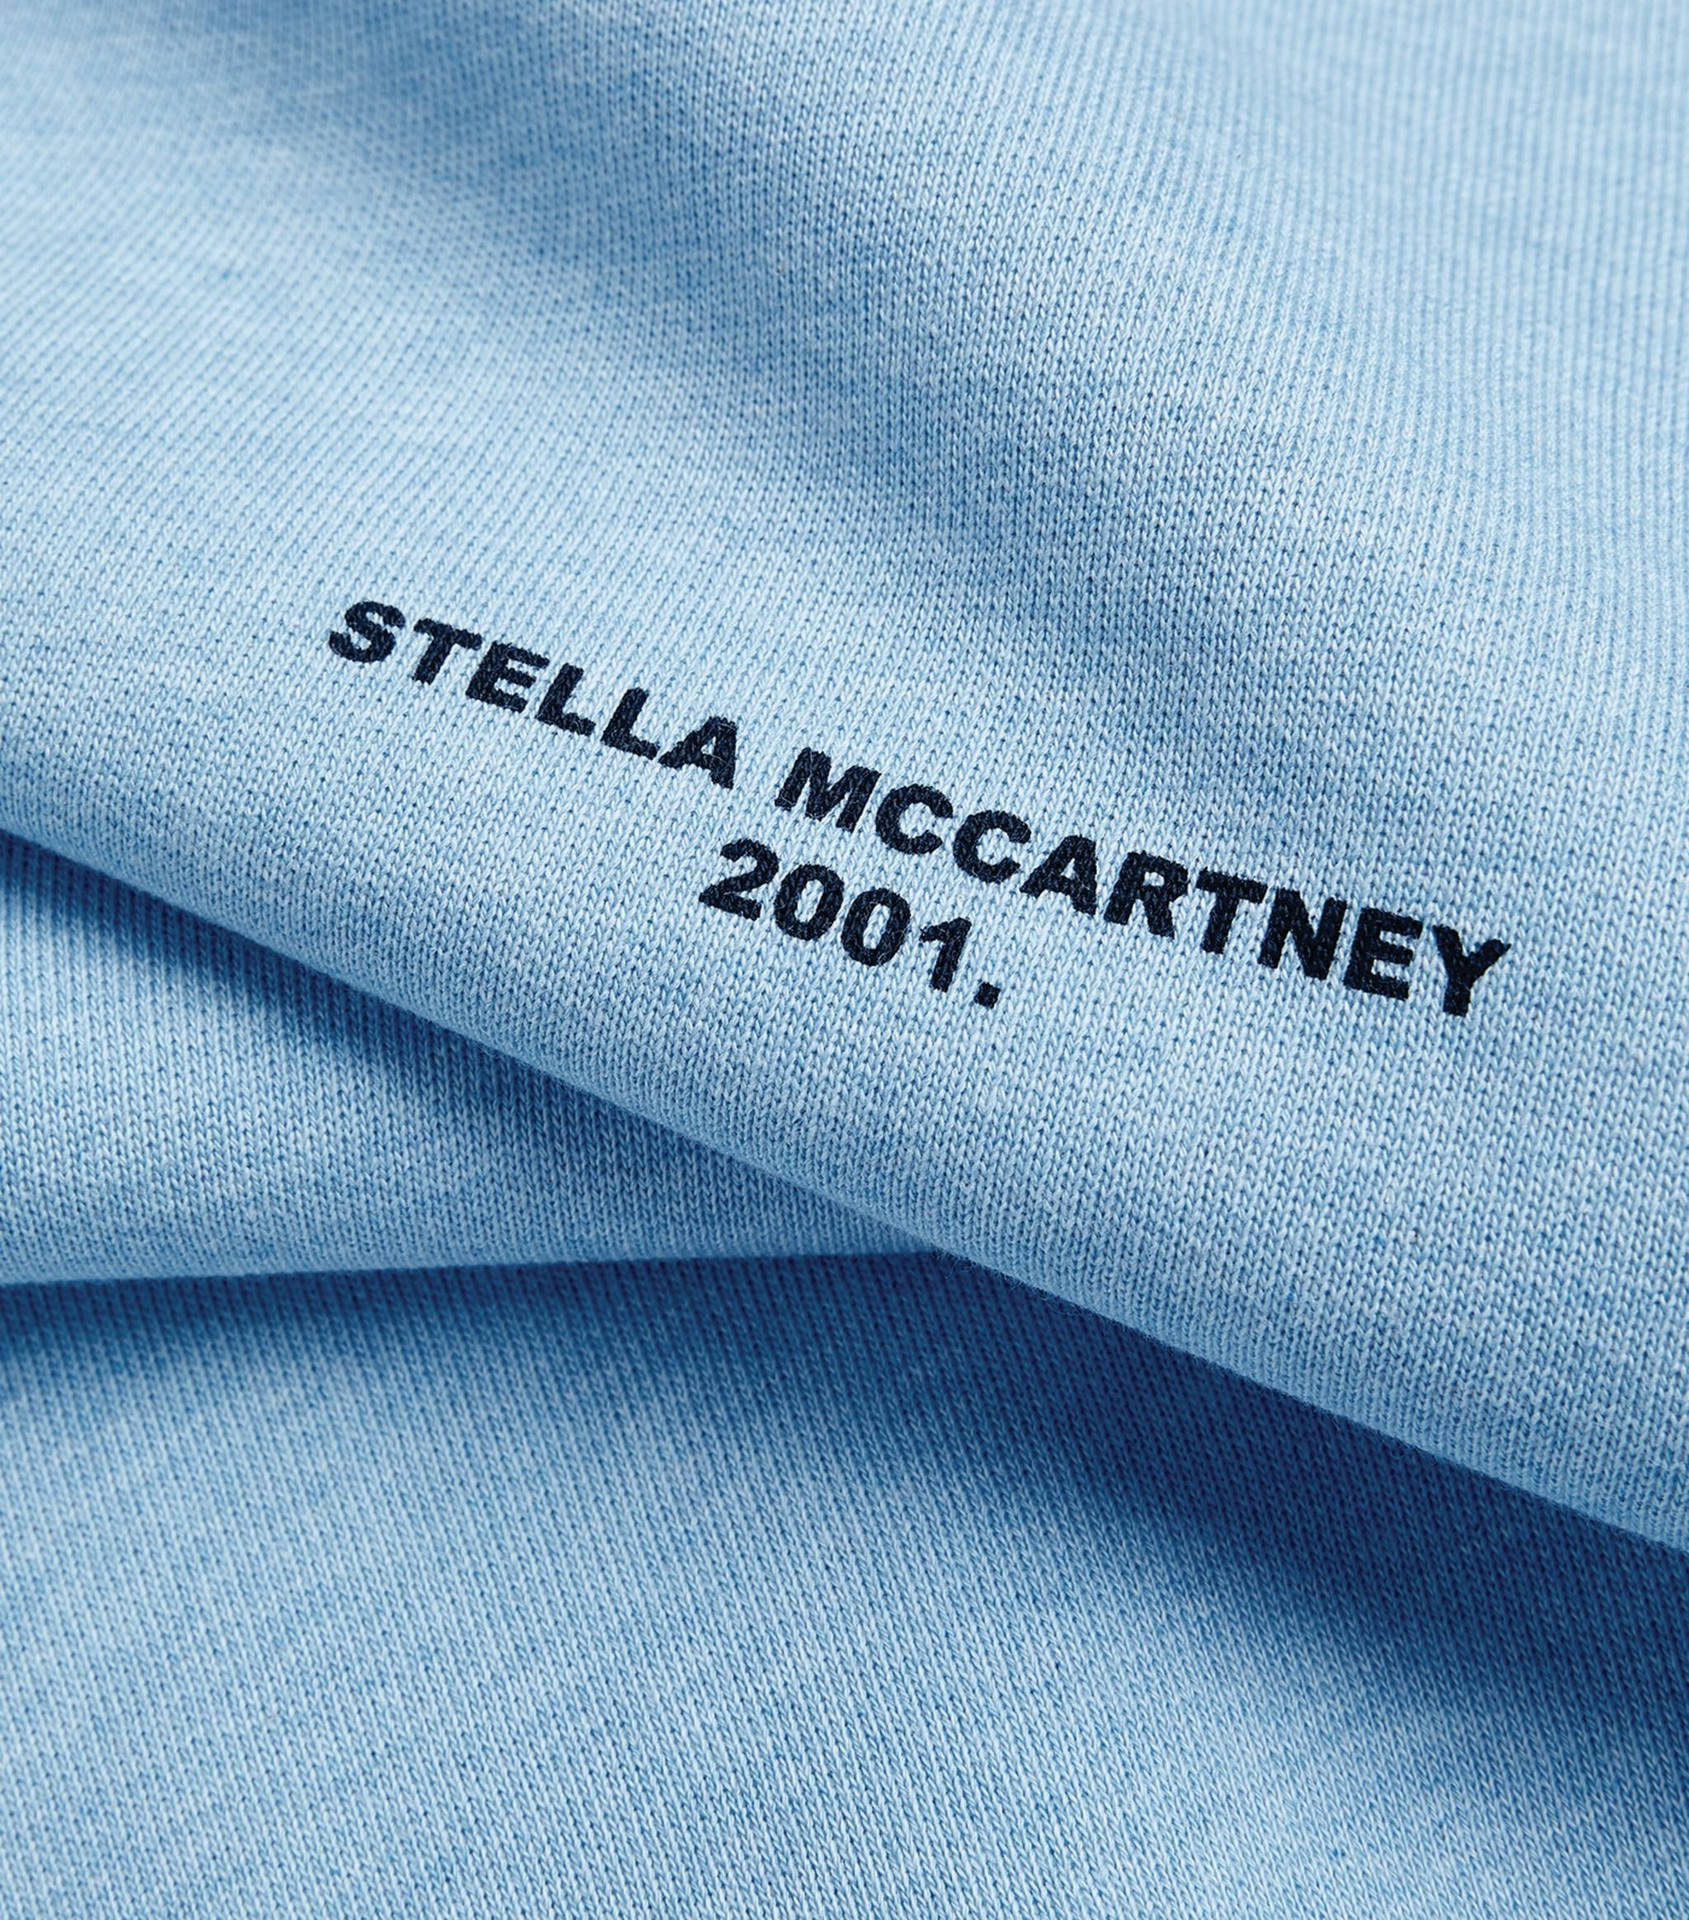 Designerstoff Mit Stella Mccartney-logo. Wallpaper